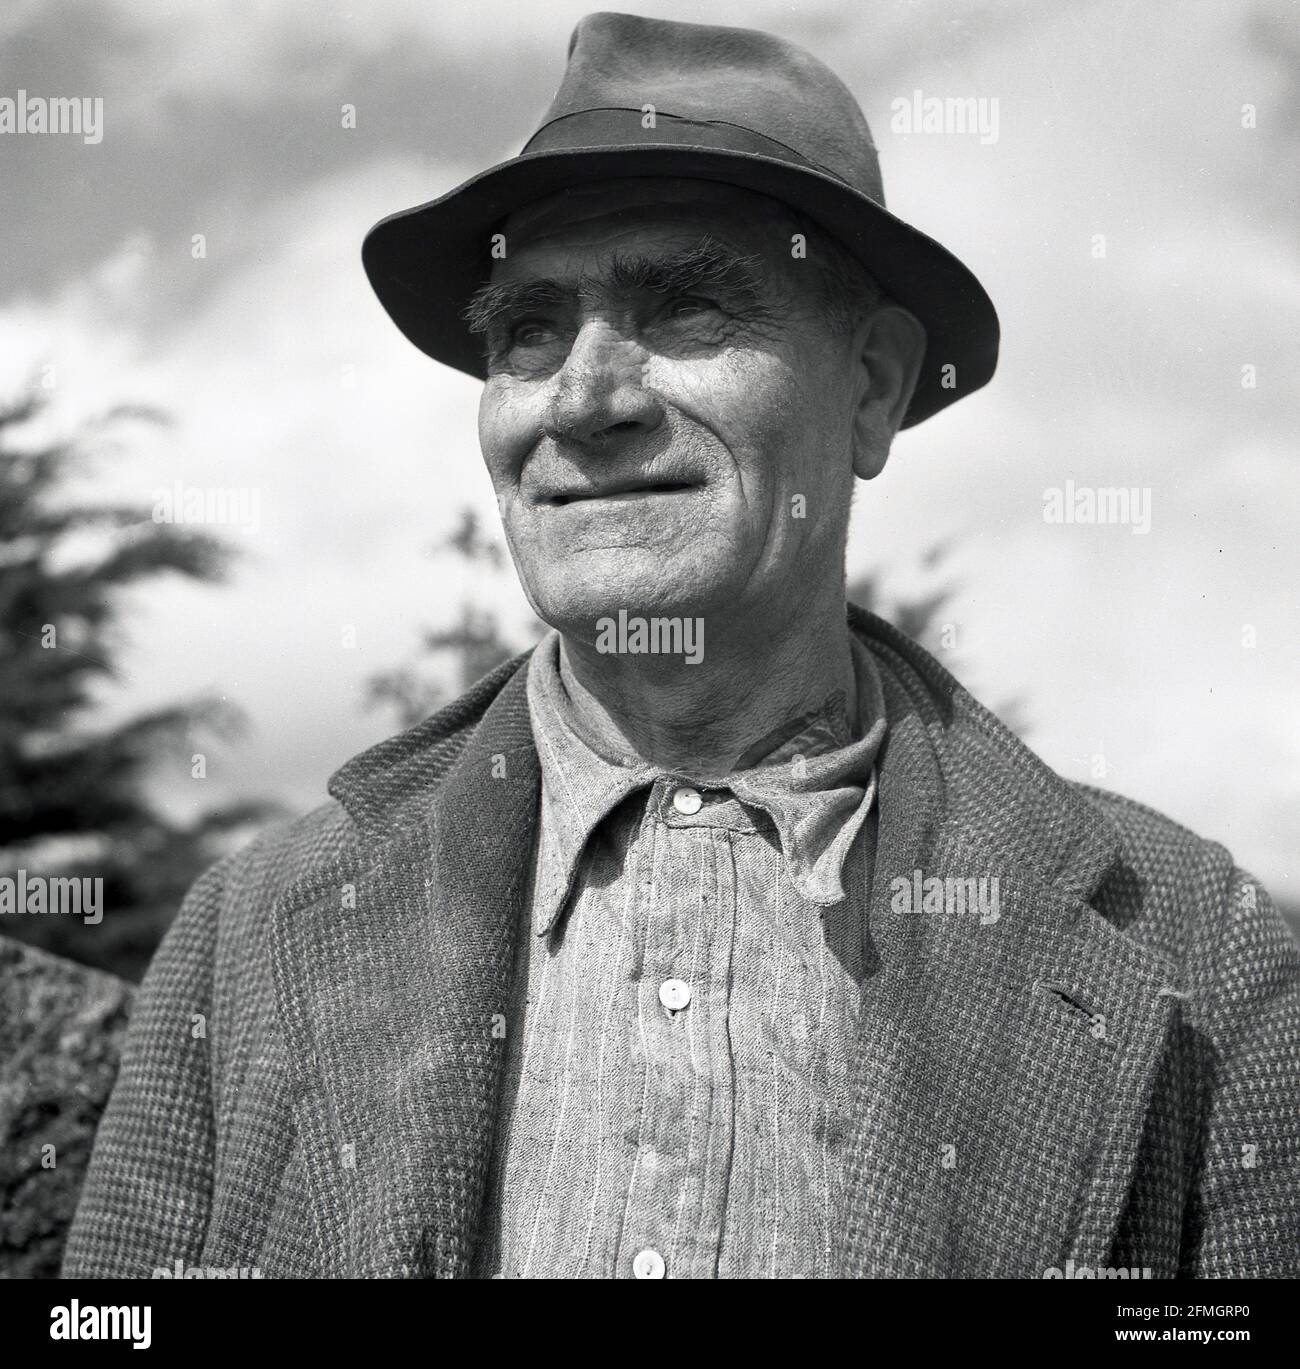 Années 1950, photo historique de J Allan Cash, profil d'un agriculteur, Irlande du Nord. La vie sur une ferme à cette époque était dure et les hommes, qui travailleraient souvent 24 heures sur 24, étaient eux-mêmes de nature dure. Banque D'Images